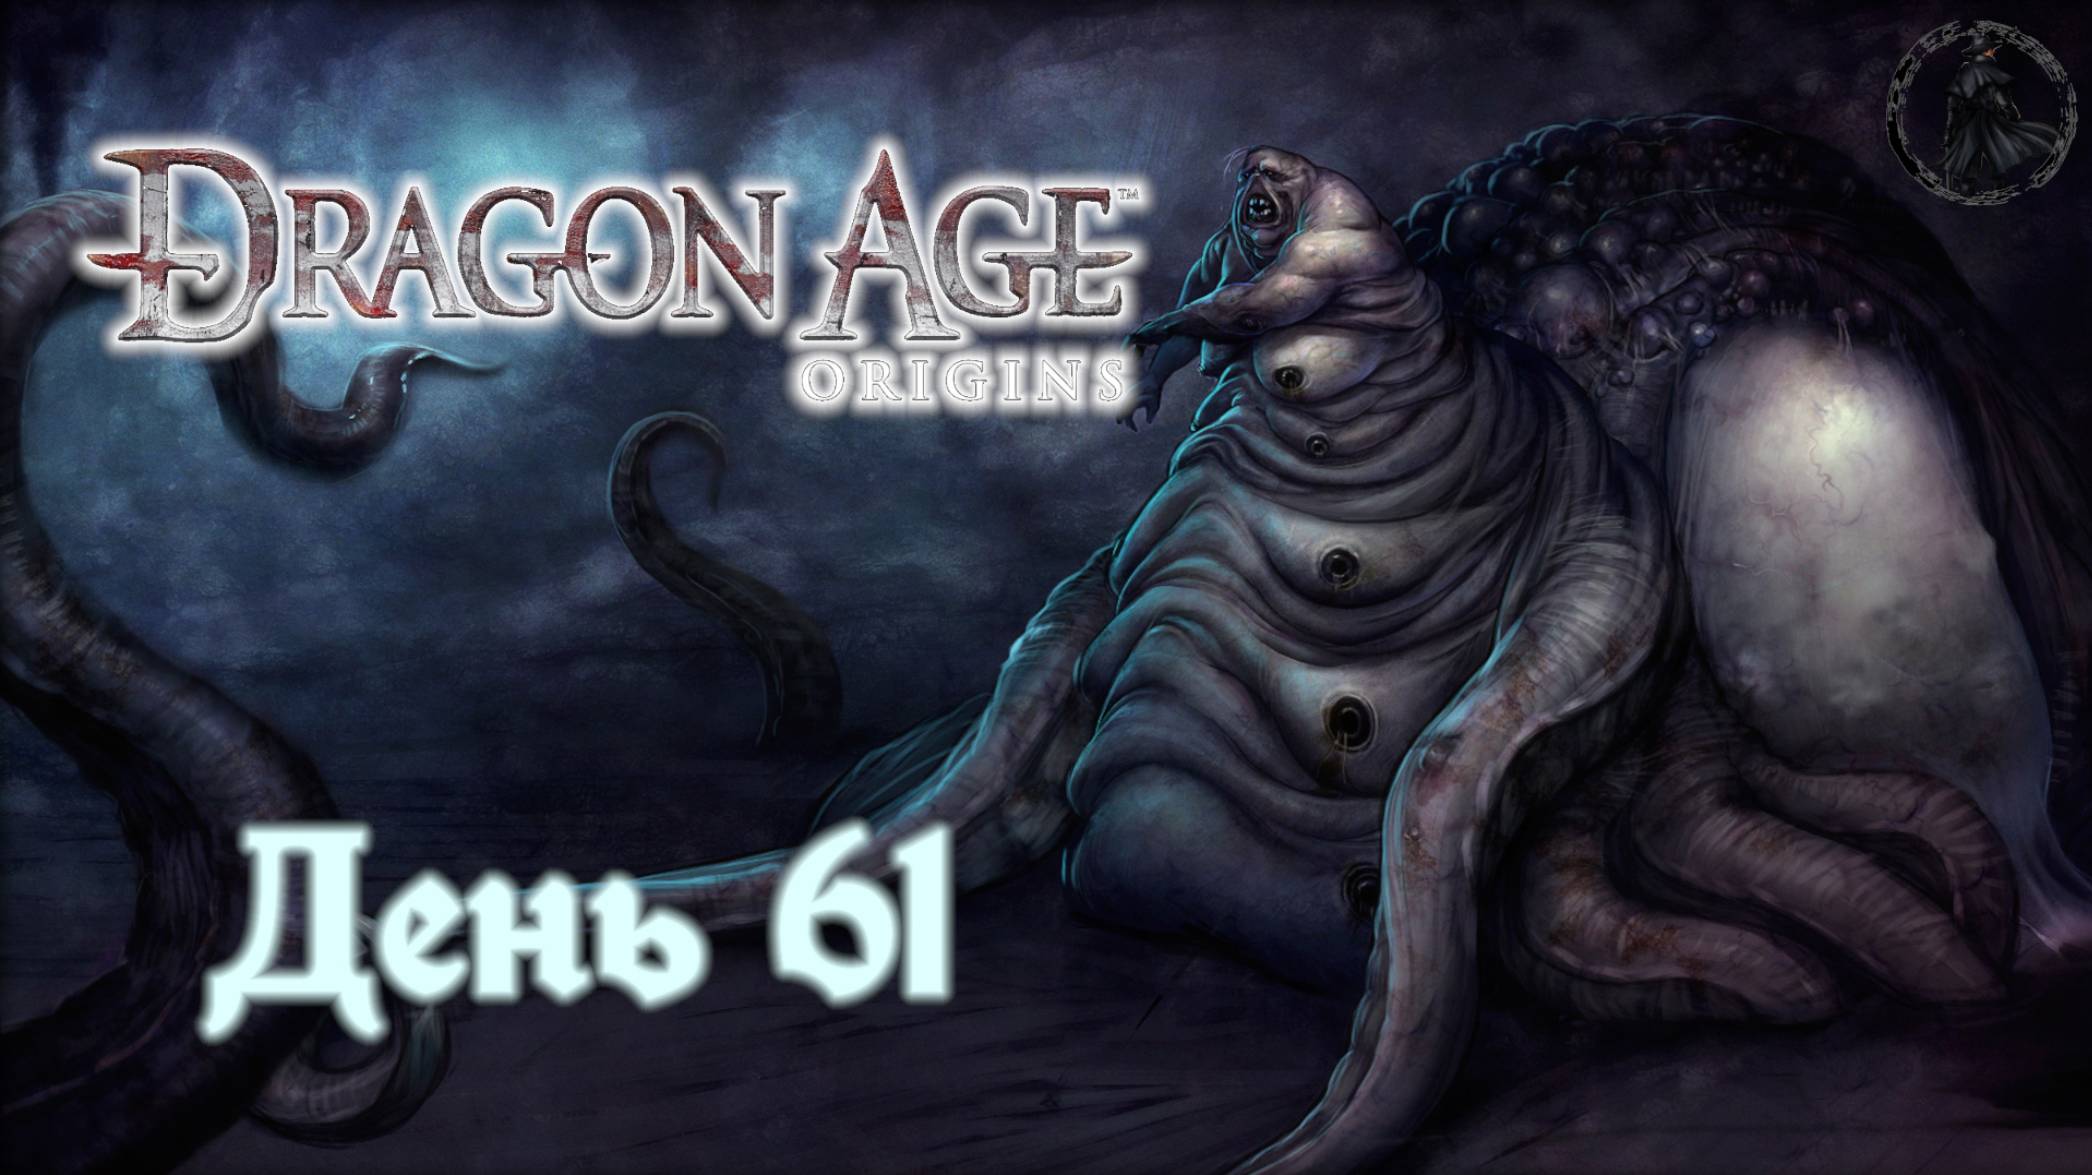 Dragon Age: Origins. Прохождение. Огрен (часть 61)